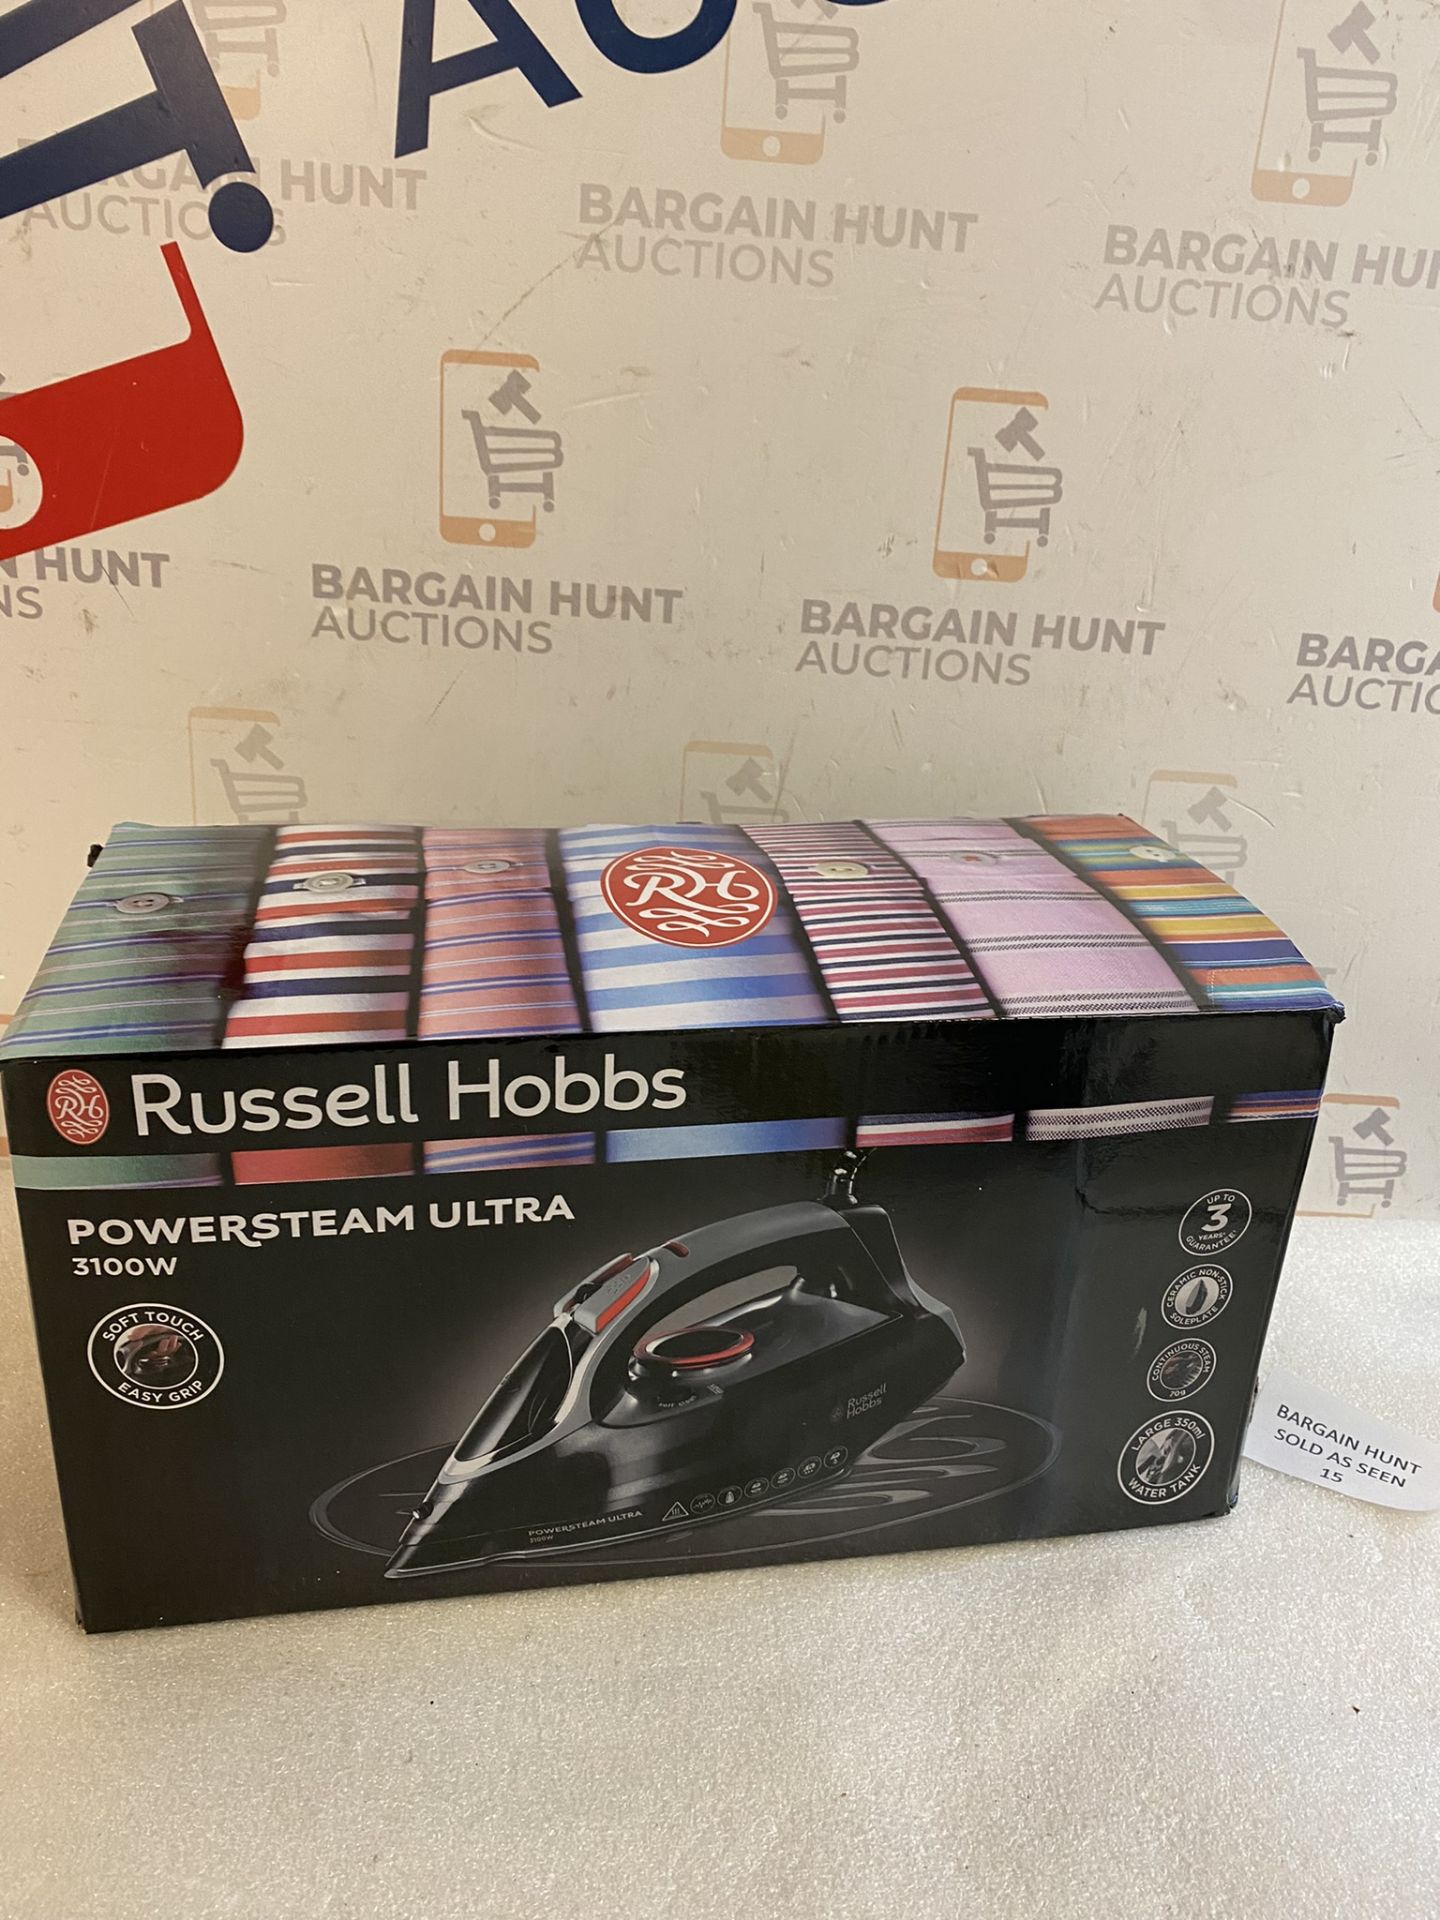 Russell Hobbs PowerSteam Ultra 3100W Vertical Steam Iron RRP £39.99